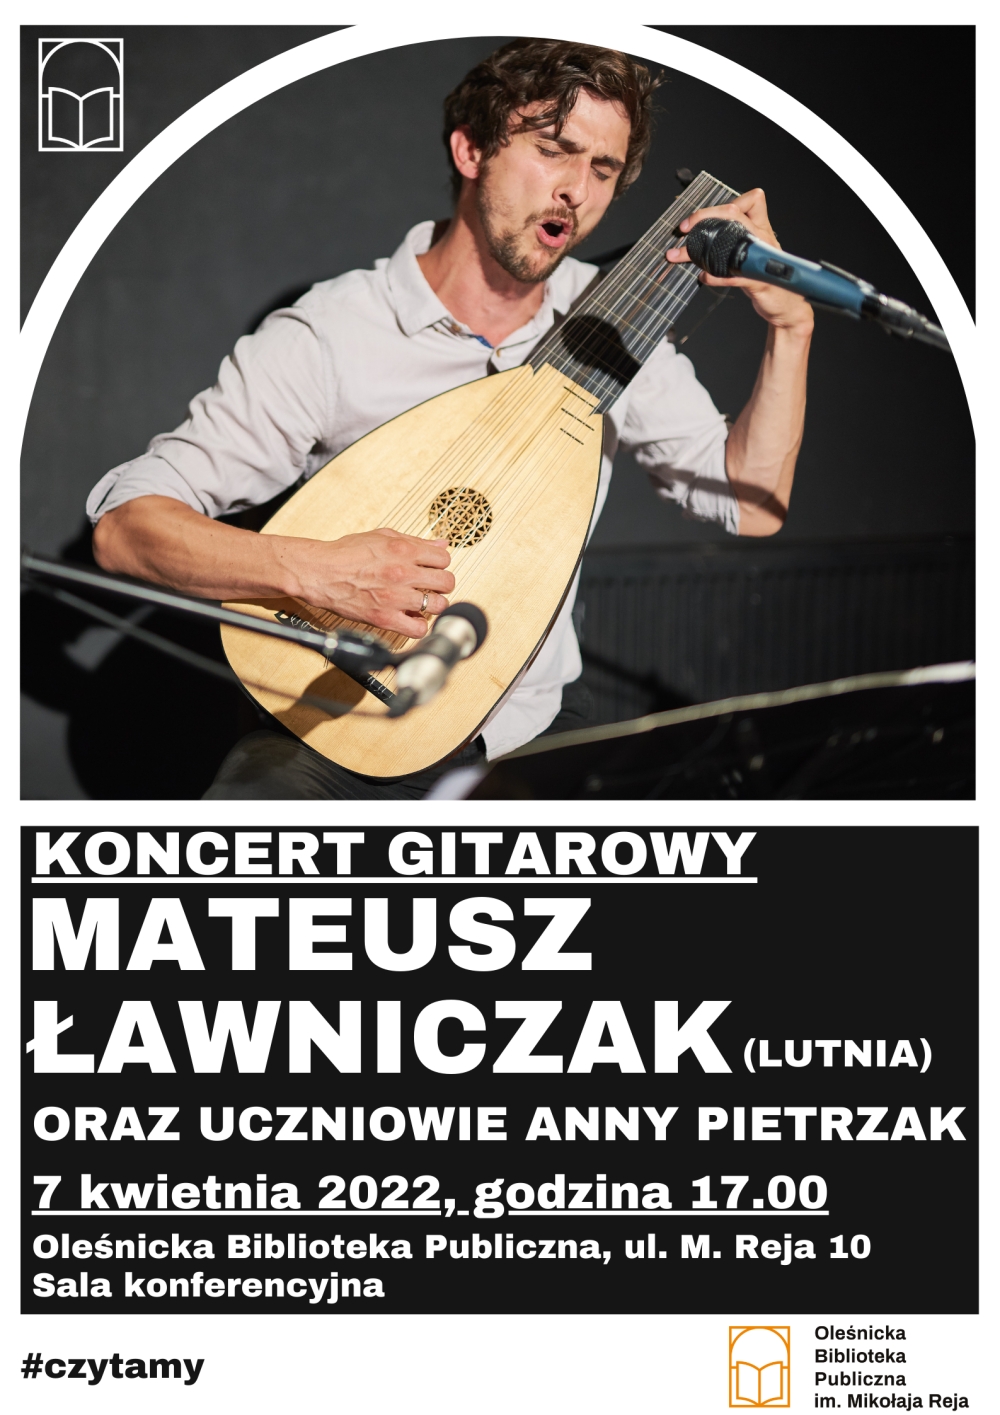 Plakat promujacy koncert Mateusza Ławniczaka i uczniów szkoły muzycznej